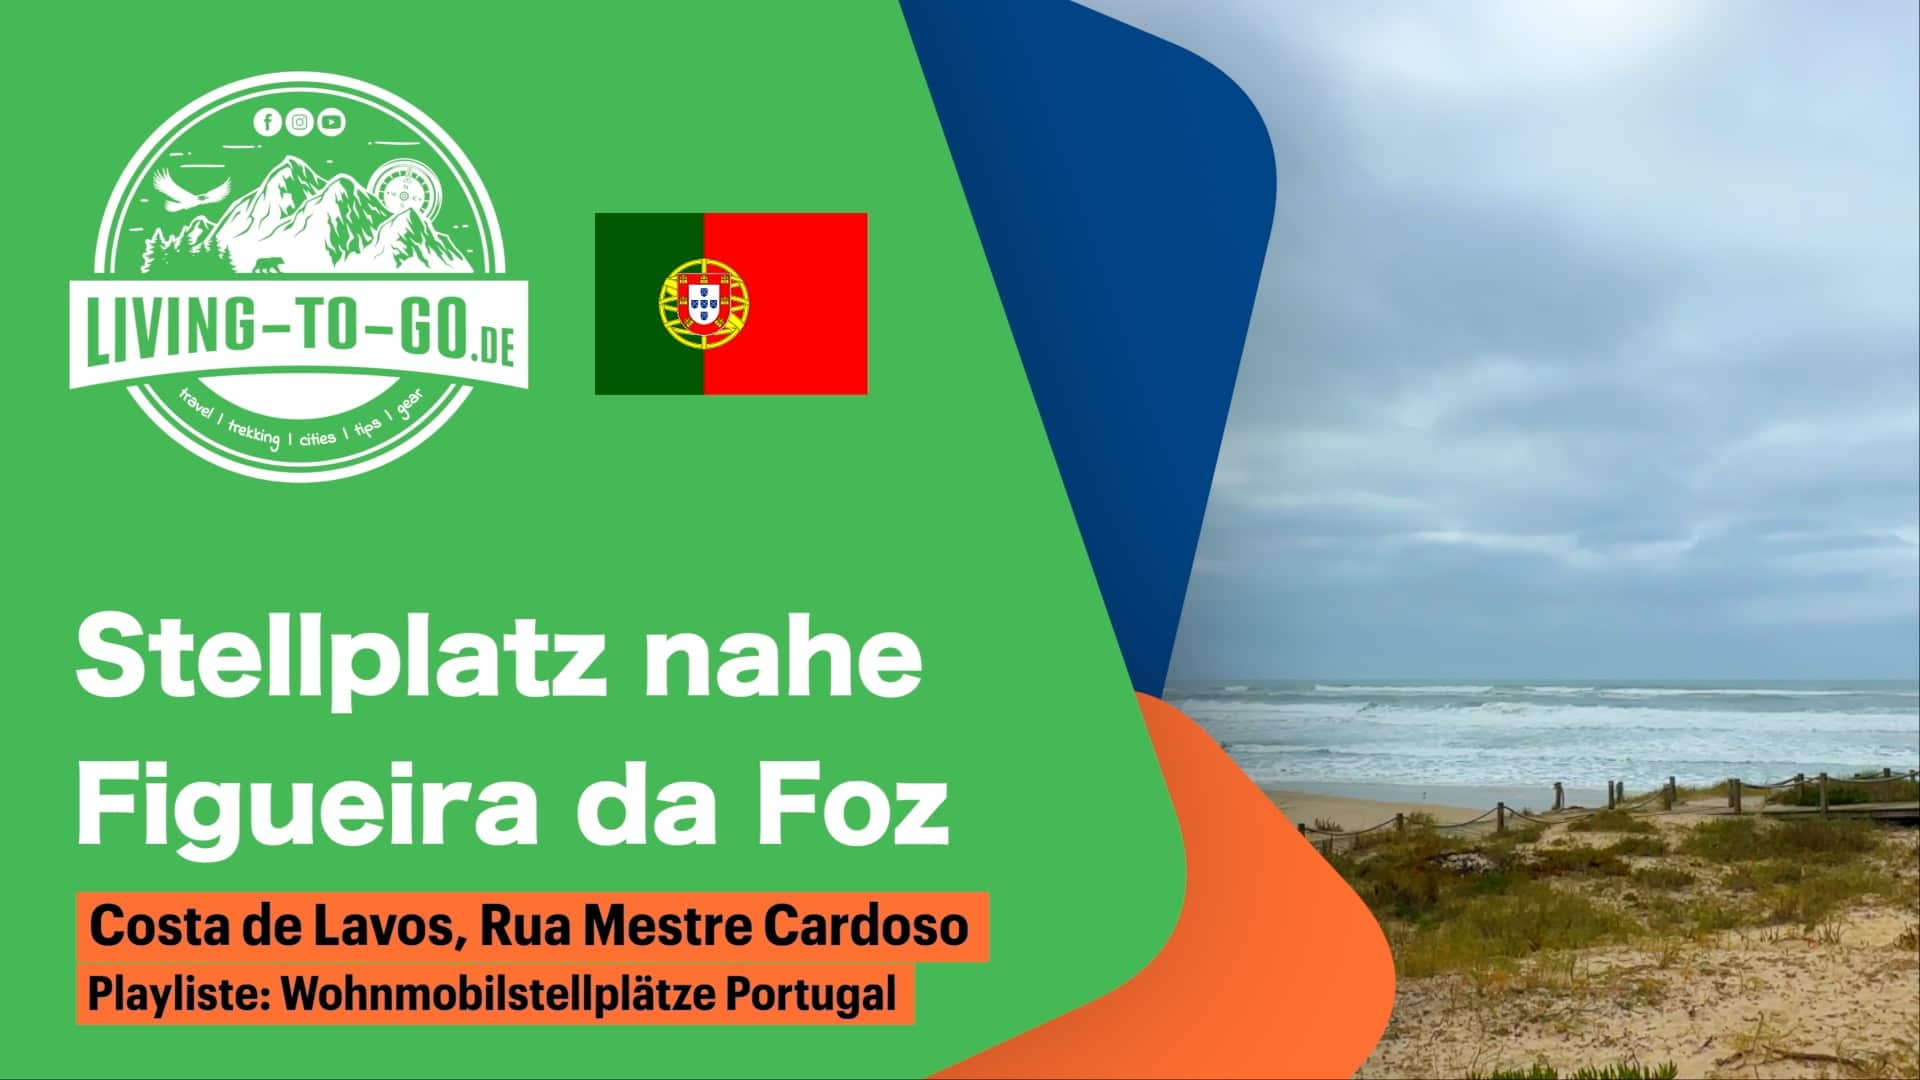 Wohnmobilstellplatz nahe Figueira da Foz